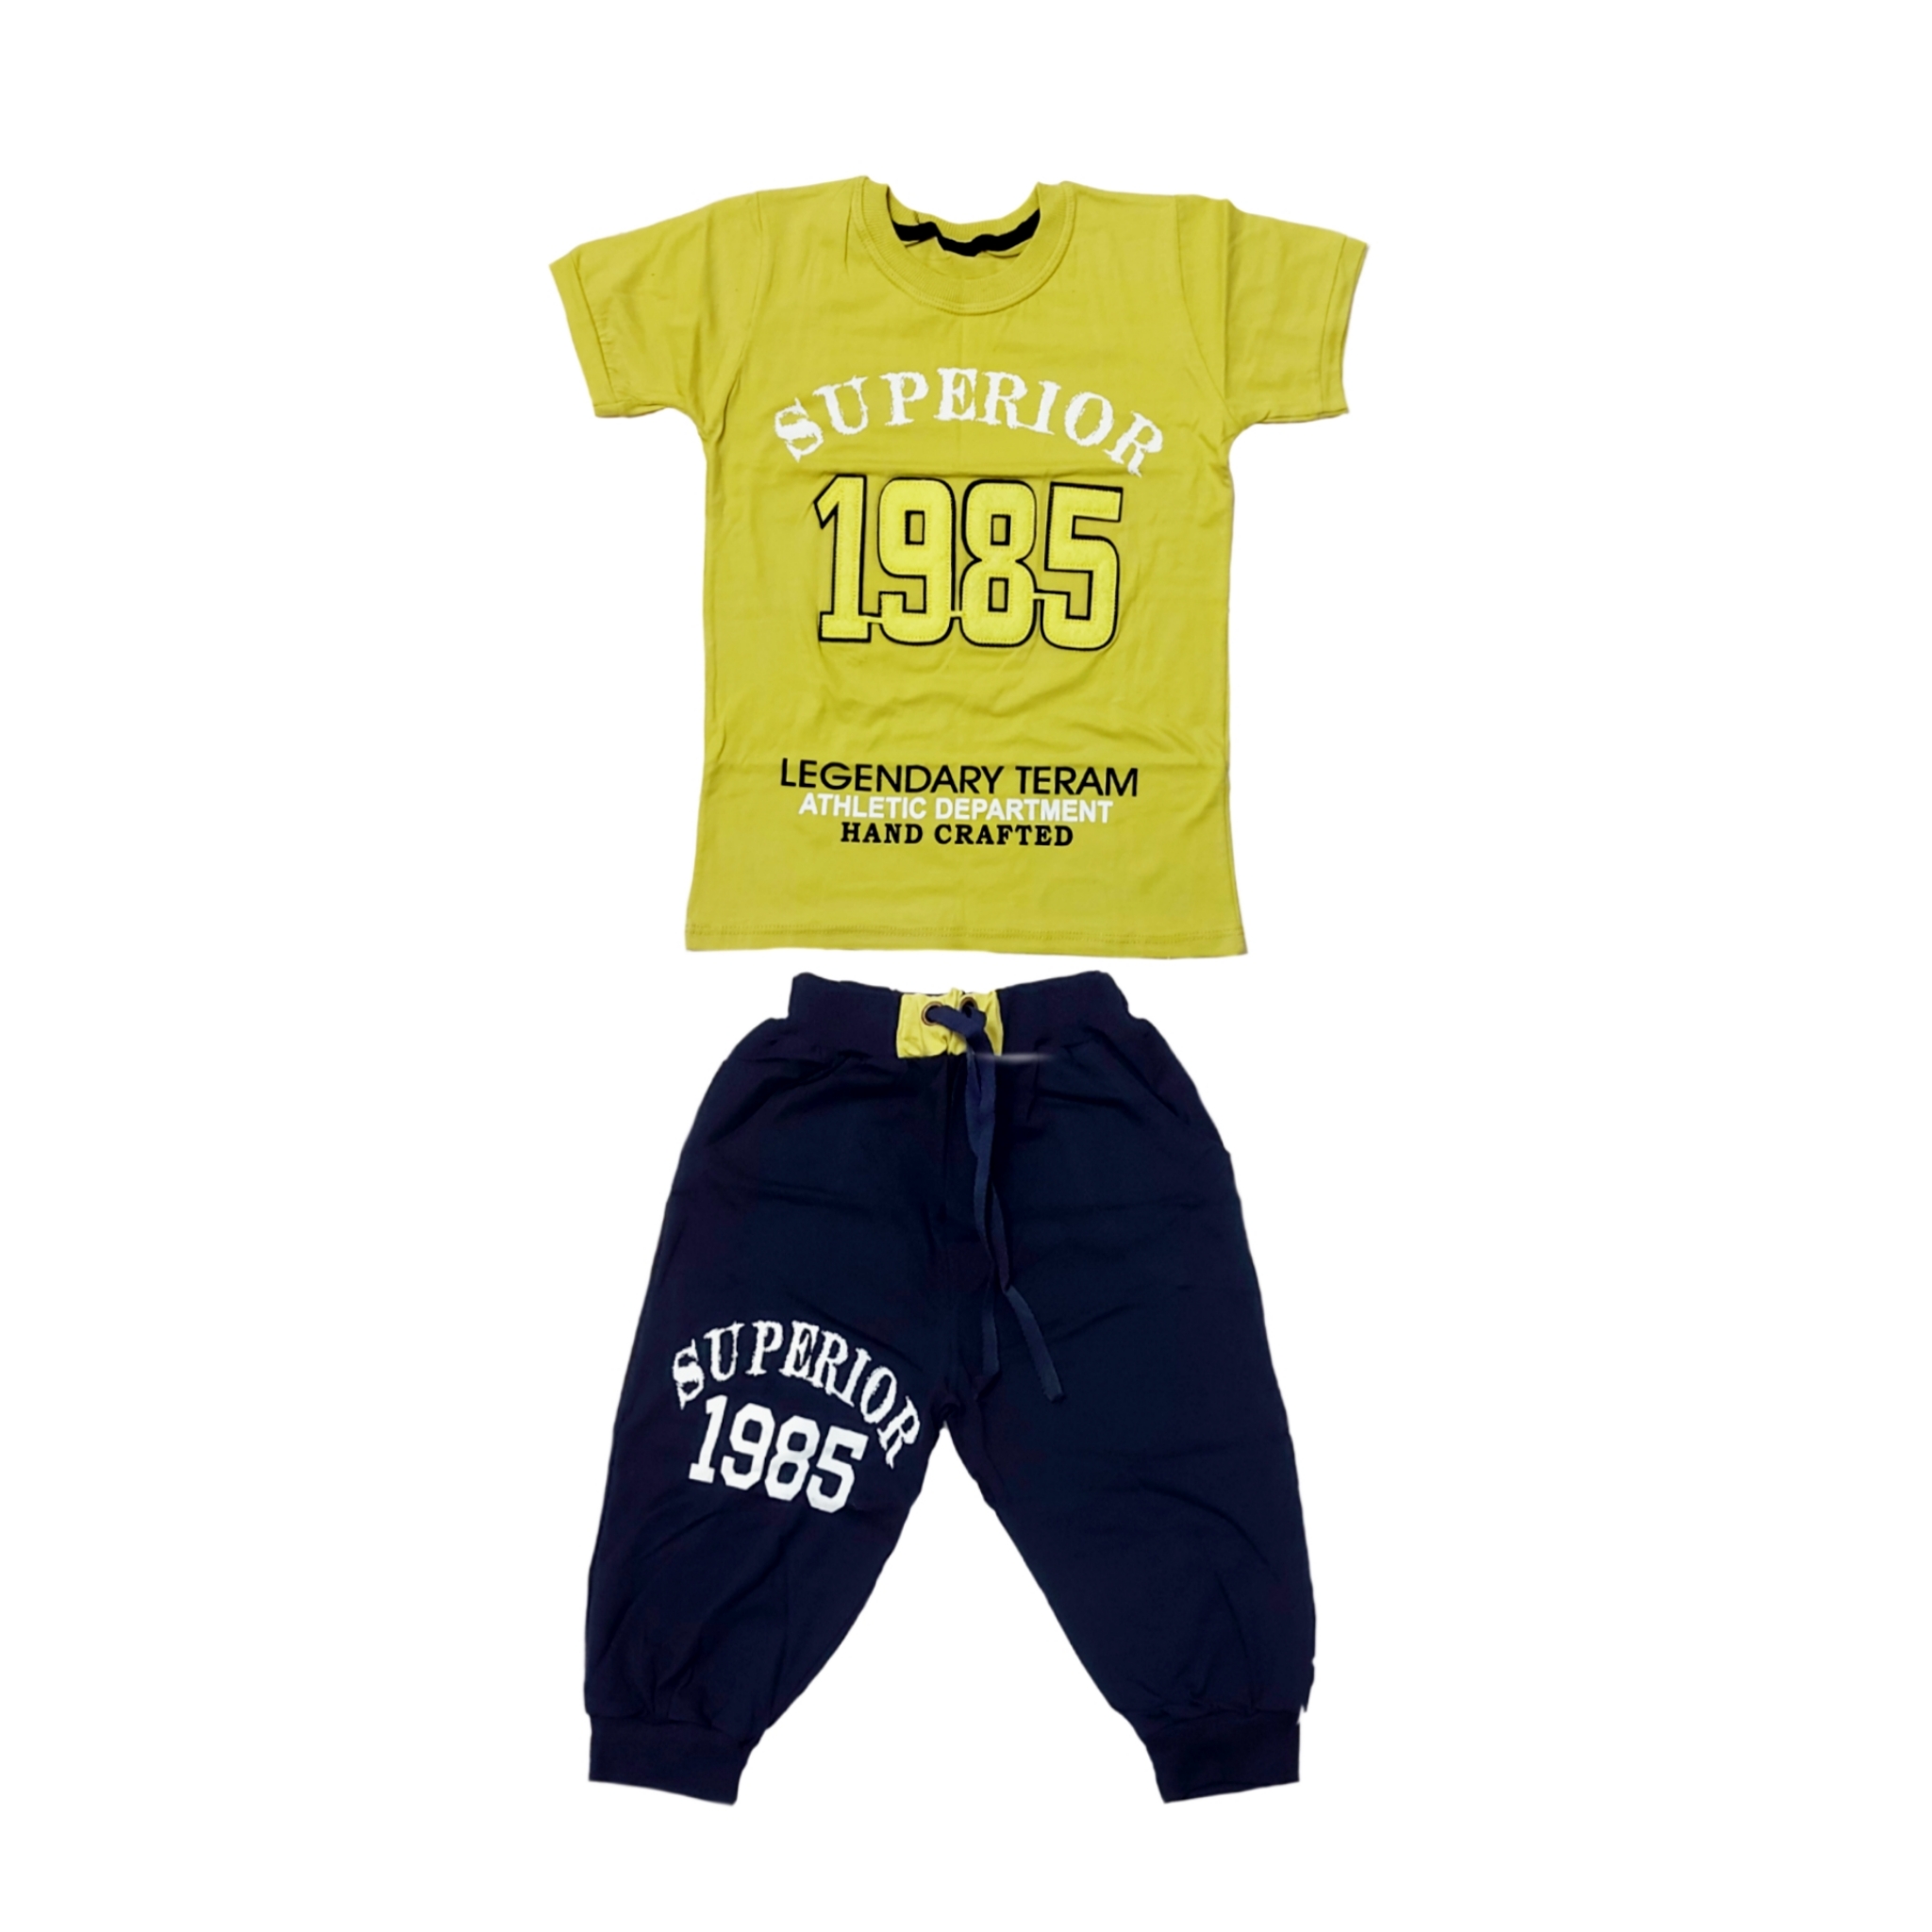 ست تی شرت و شلوارک پسرانه مدل 1985 کد 0157